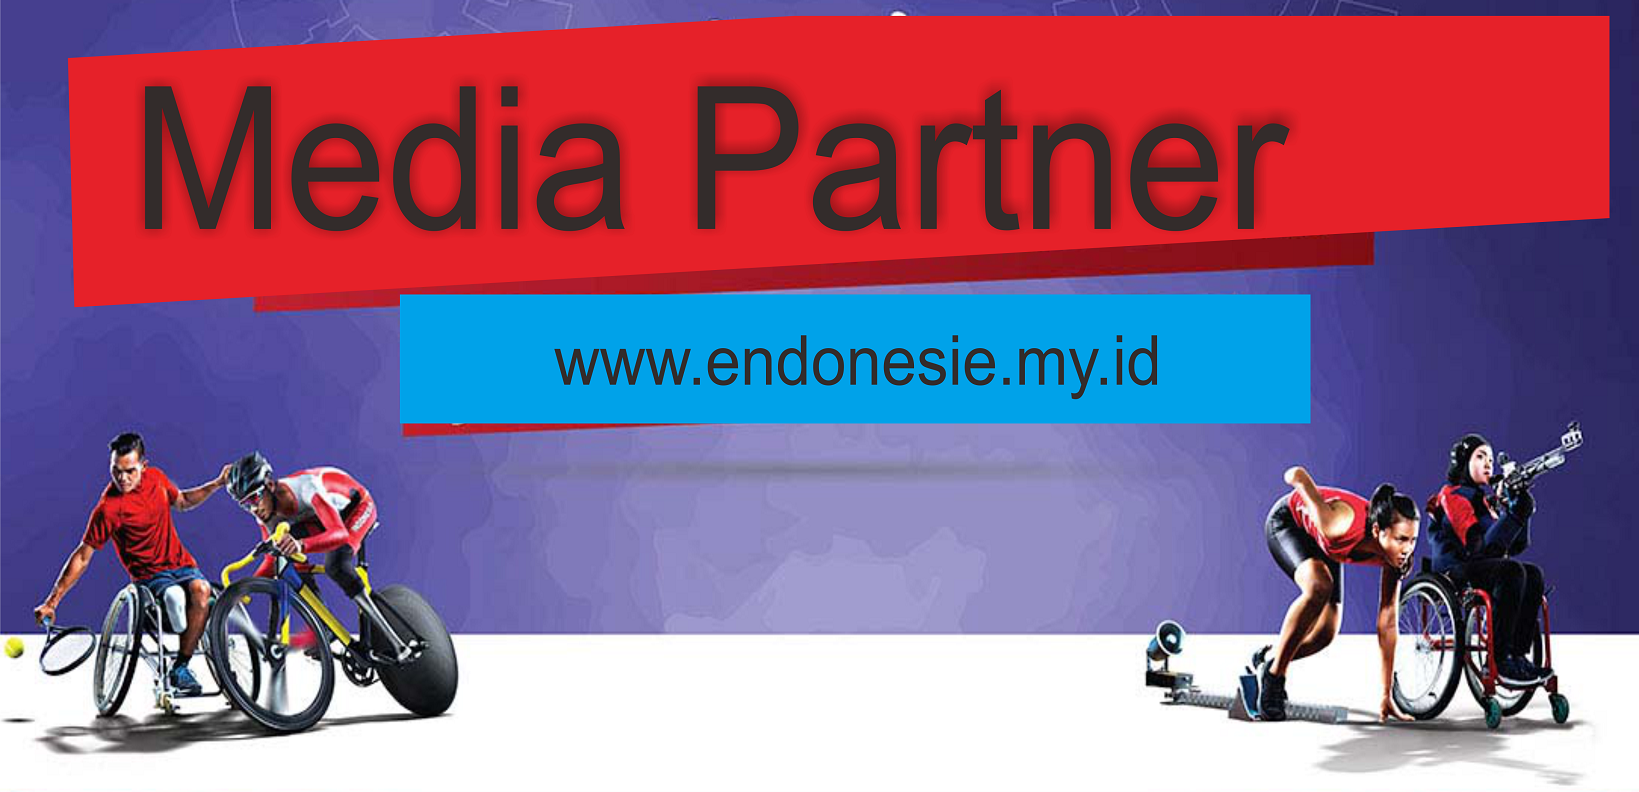 Media Partner 